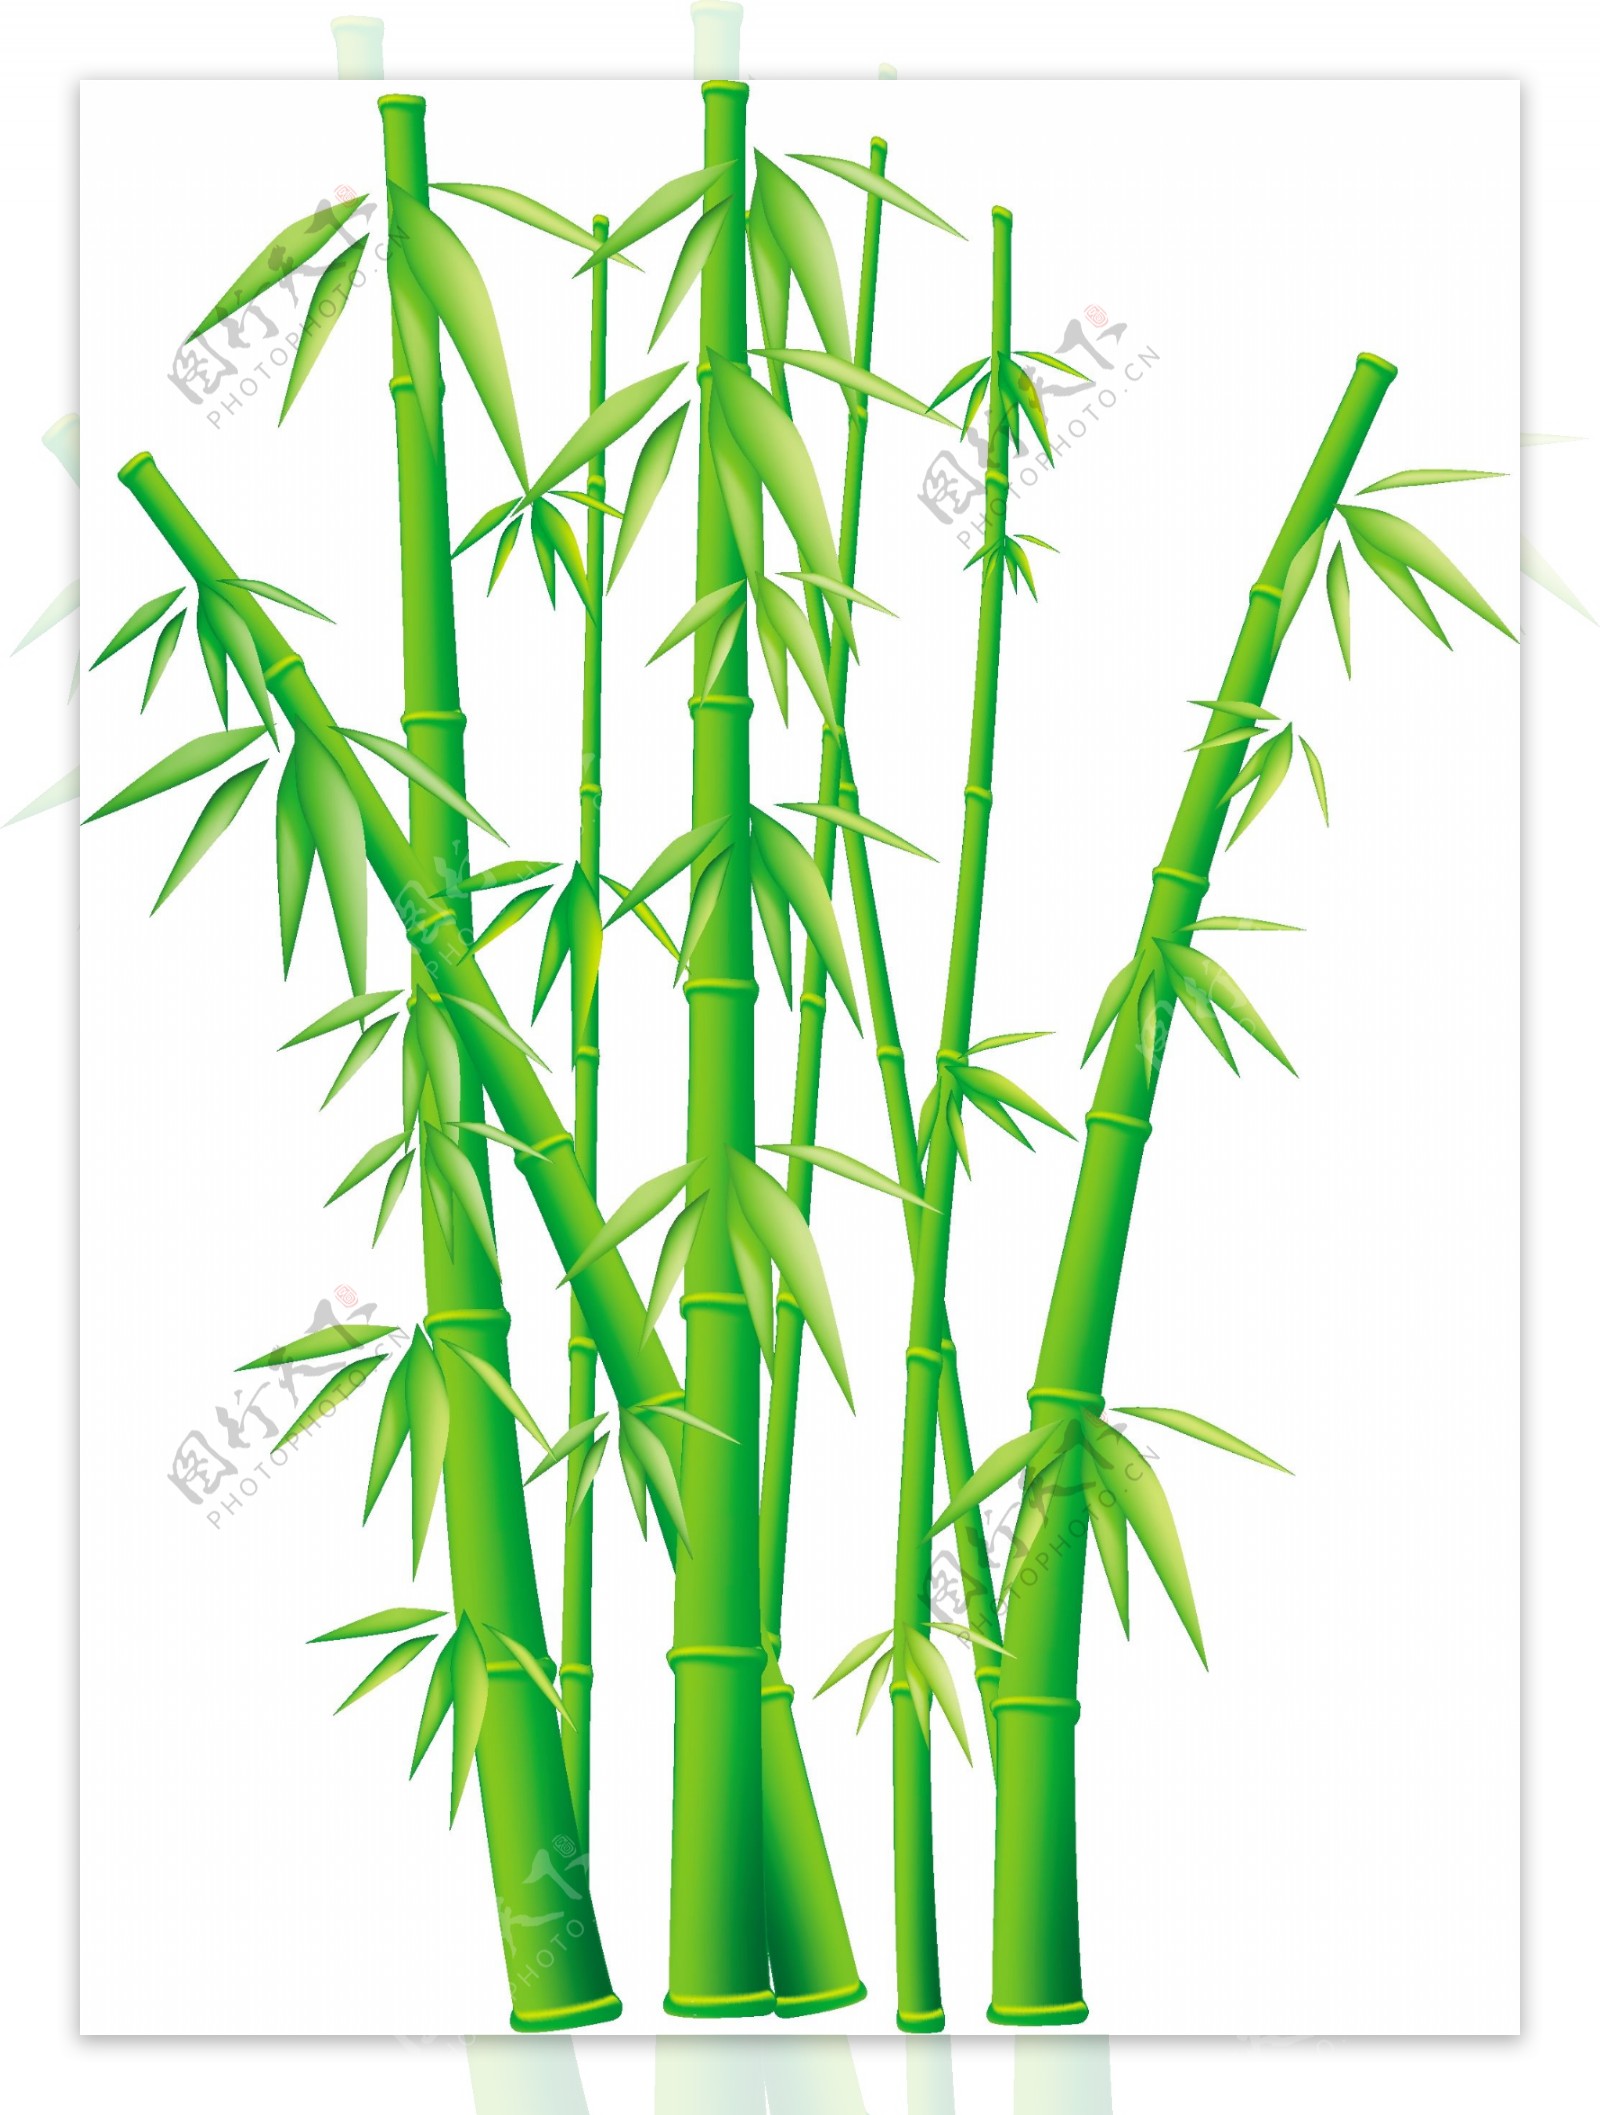 大量供应优质安吉白竹 干竹竿 竹杆 均匀美观 结实耐用-阿里巴巴